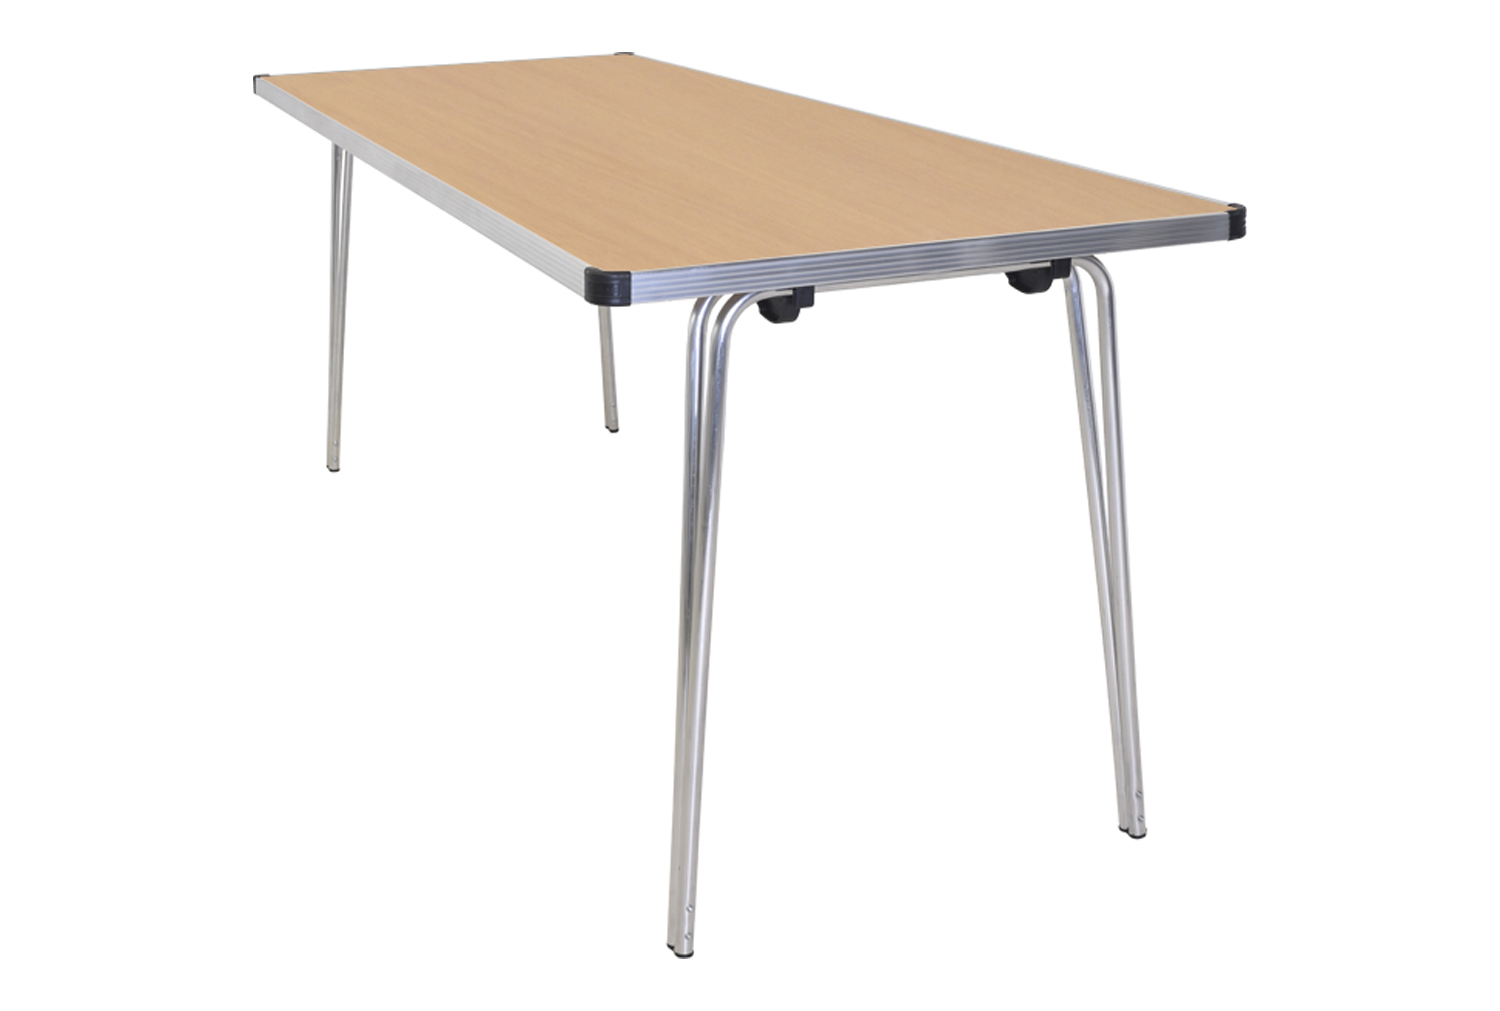 Gopak Contour Folding Table, 183wx76d (cm), Oak